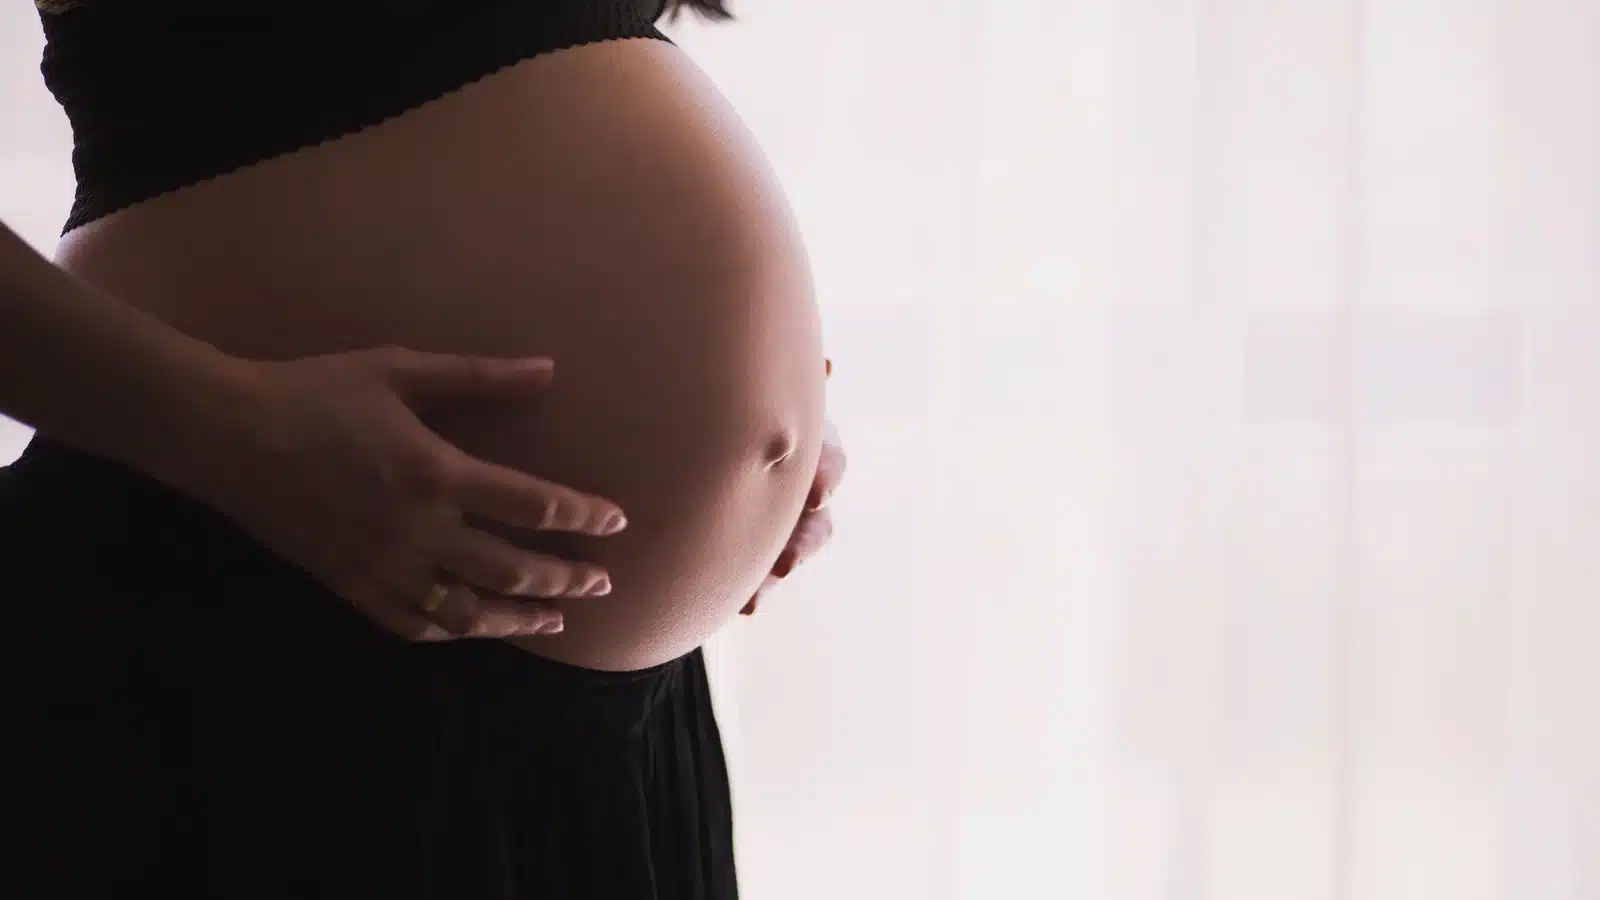 Pelvic Floor Assessment During Pregnancy